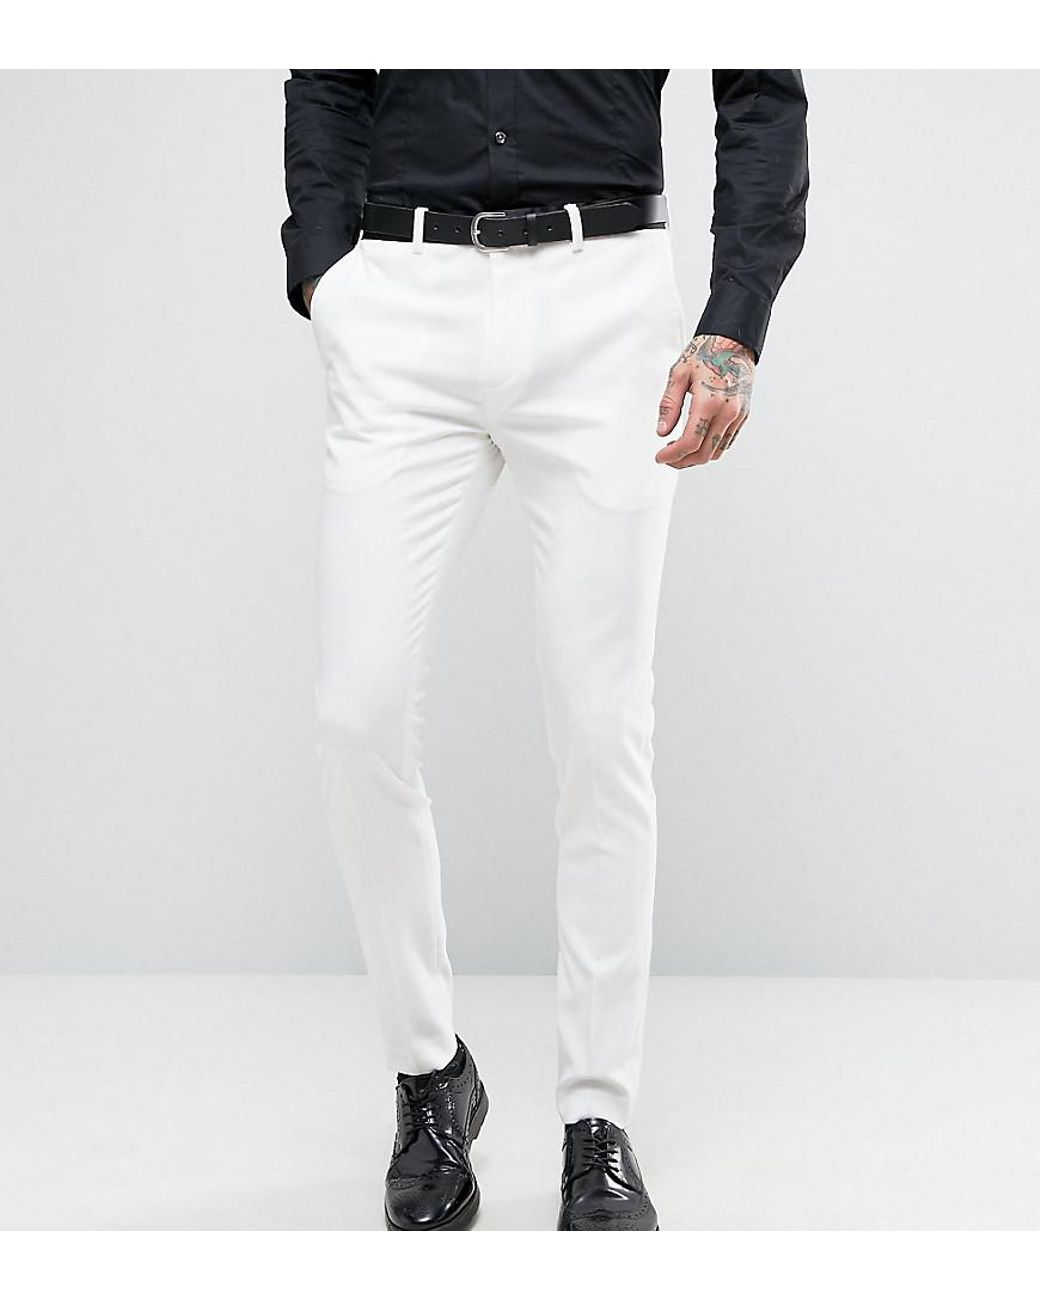 Blazer Pants Outfits Black White 2 Piece Set Suit Fashion Accessories  eBay